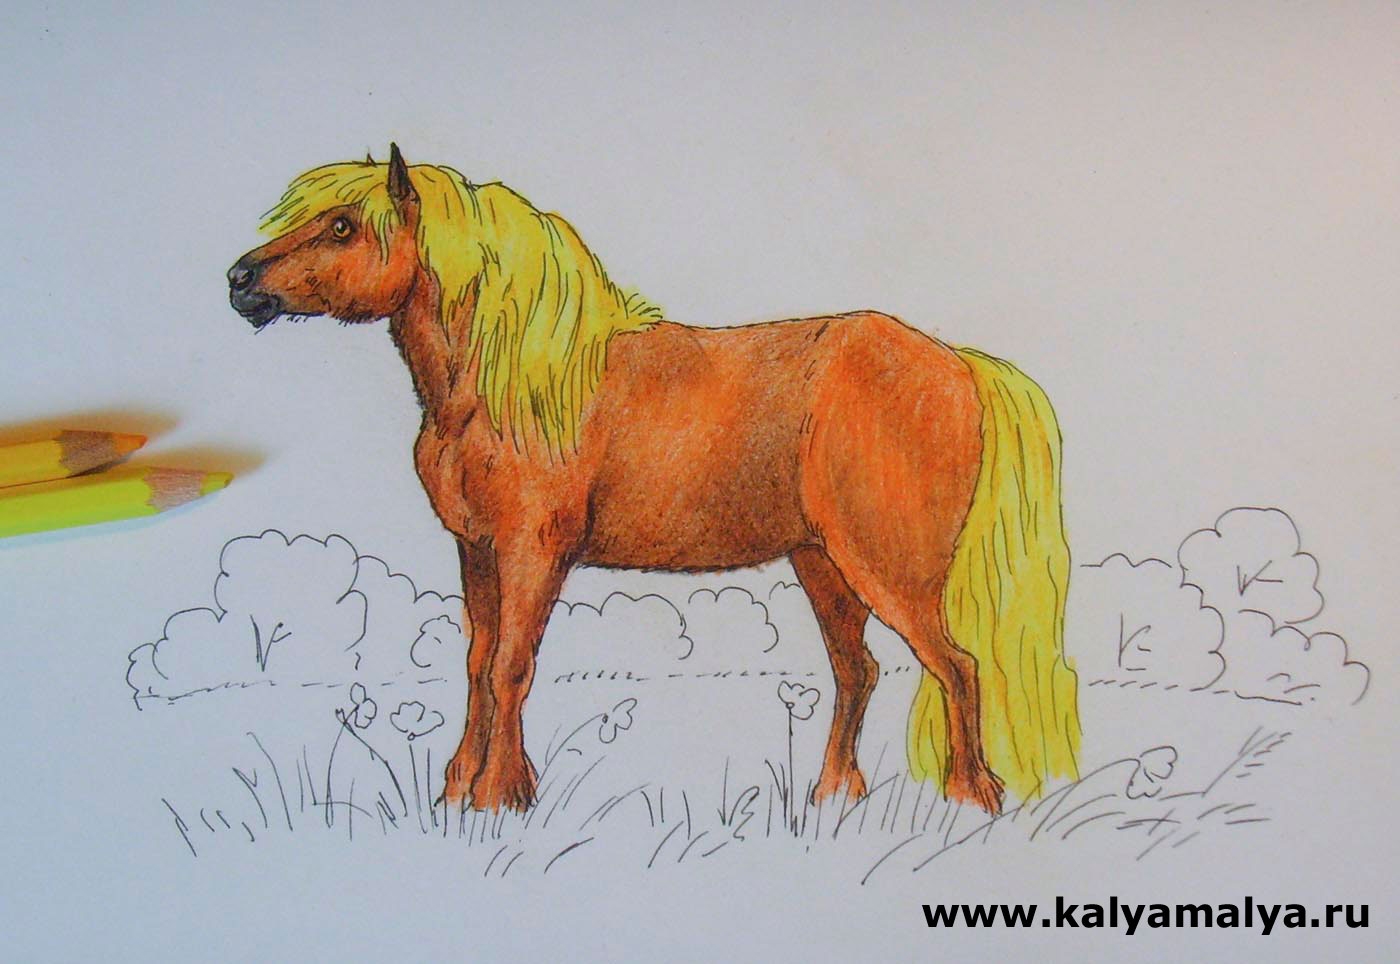 Конь с розовой гривой 6 класс рисунок